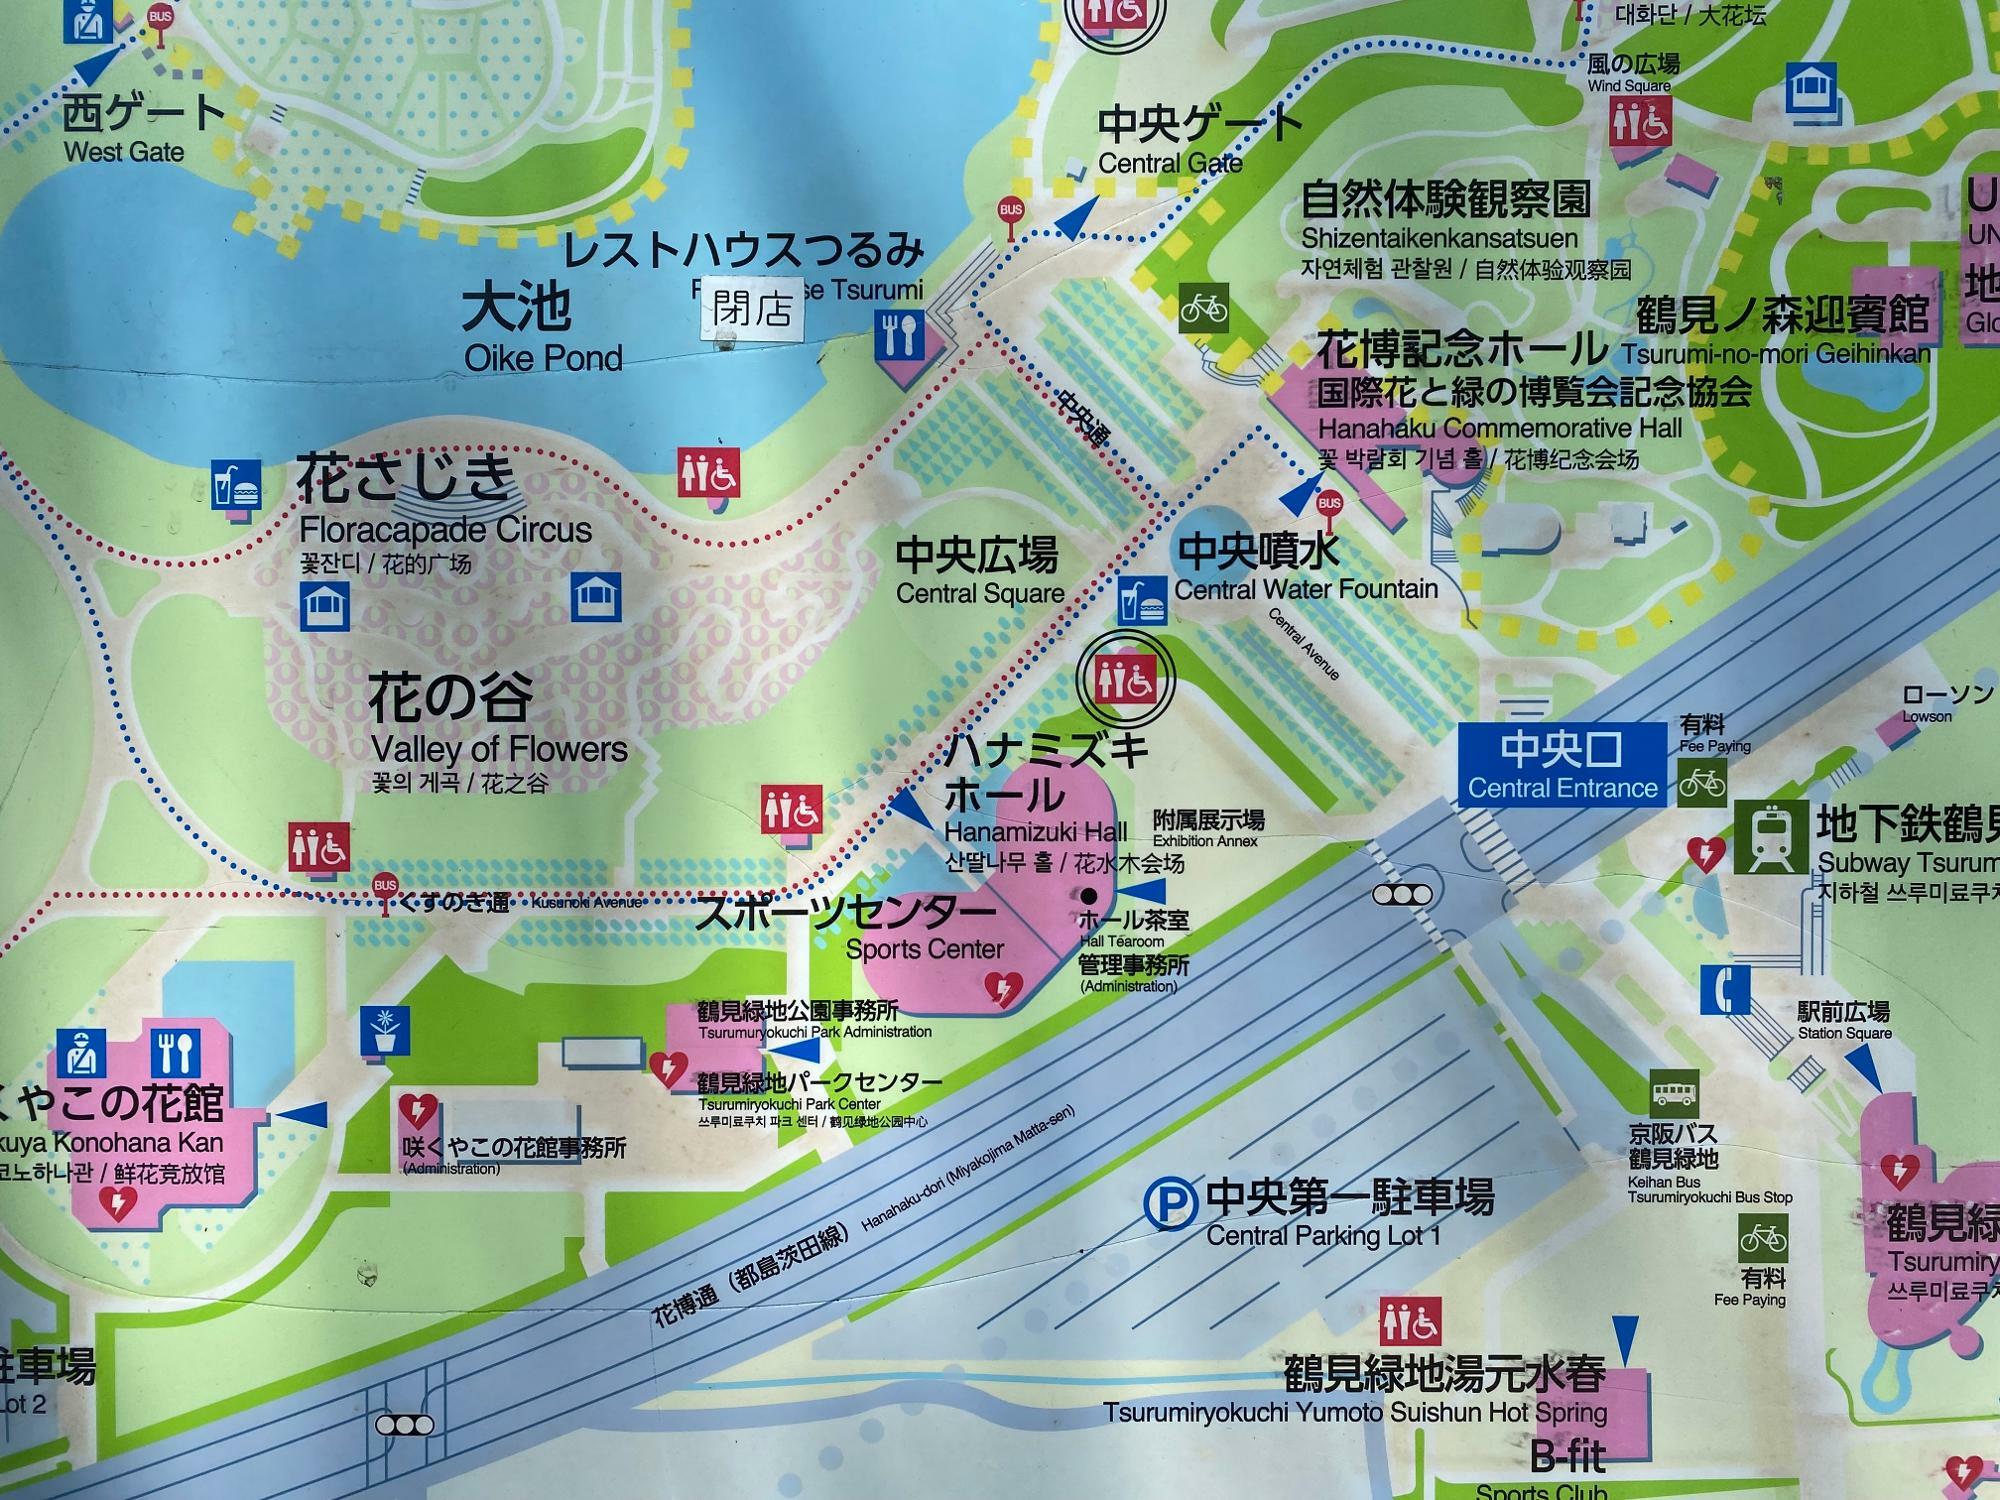 イベント開催場所付近の園内マップ